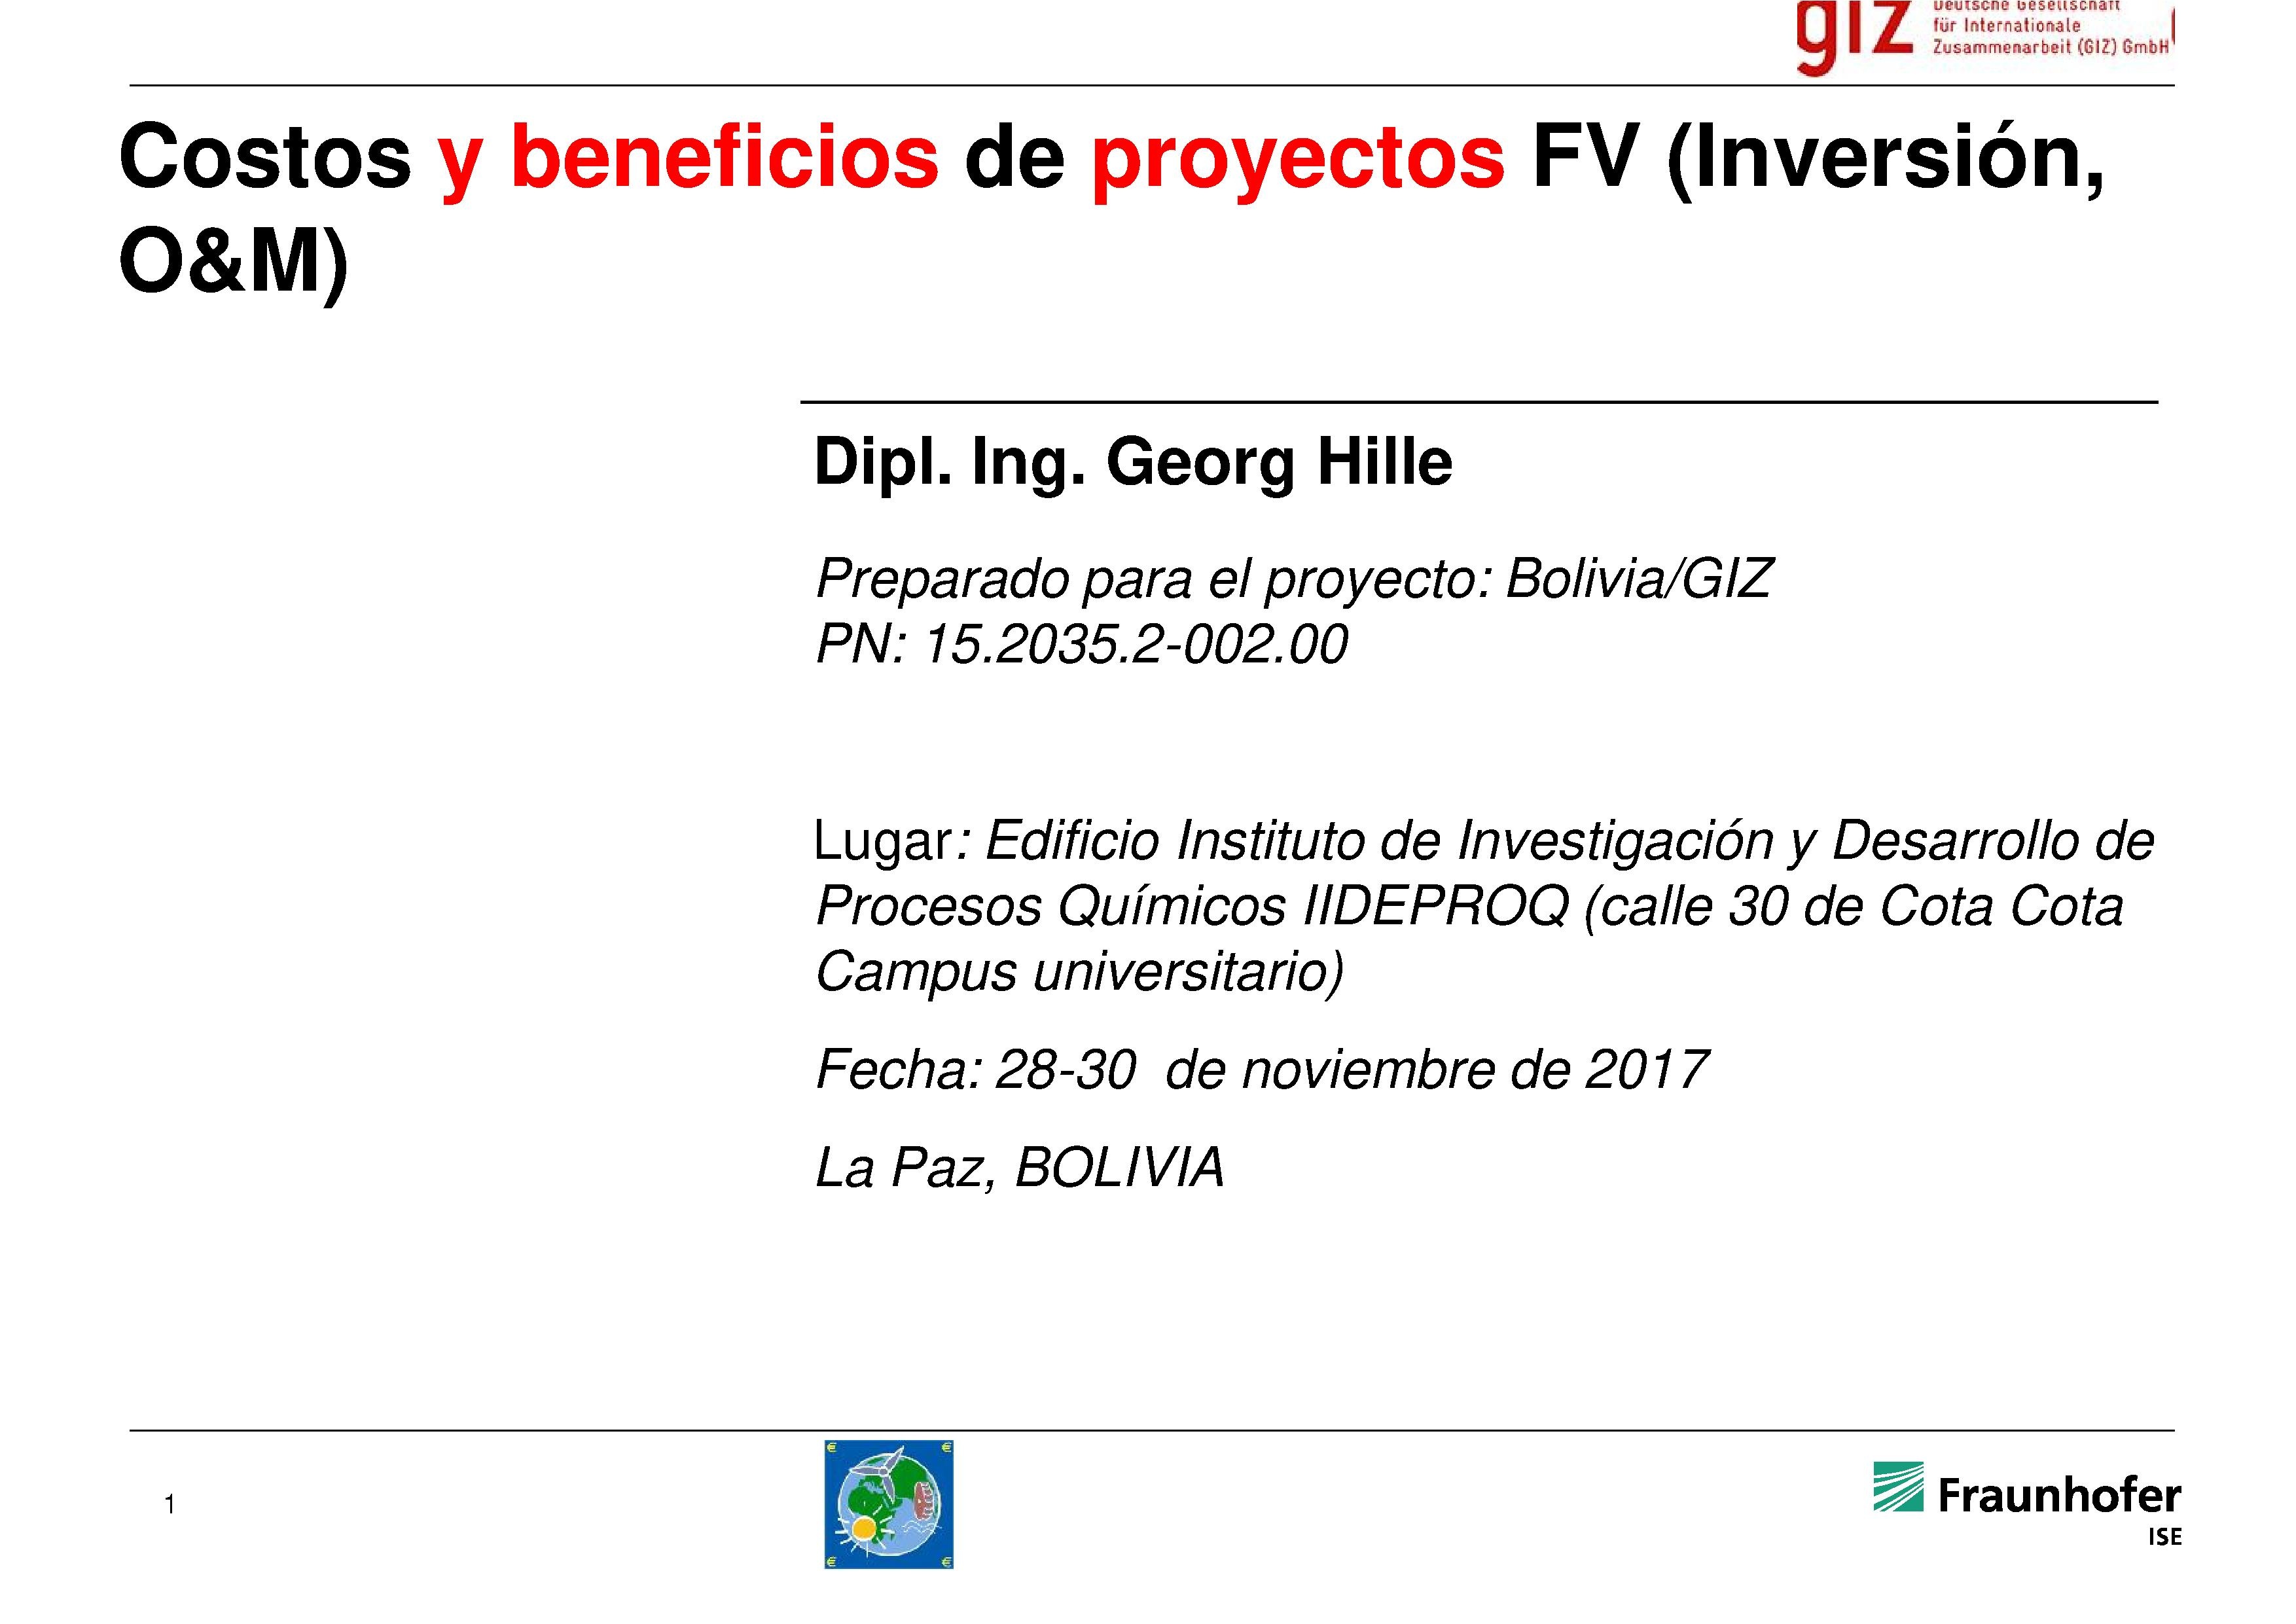 • Costos y beneficios de proyectos FV (inversión O&M) (Georg Hille)